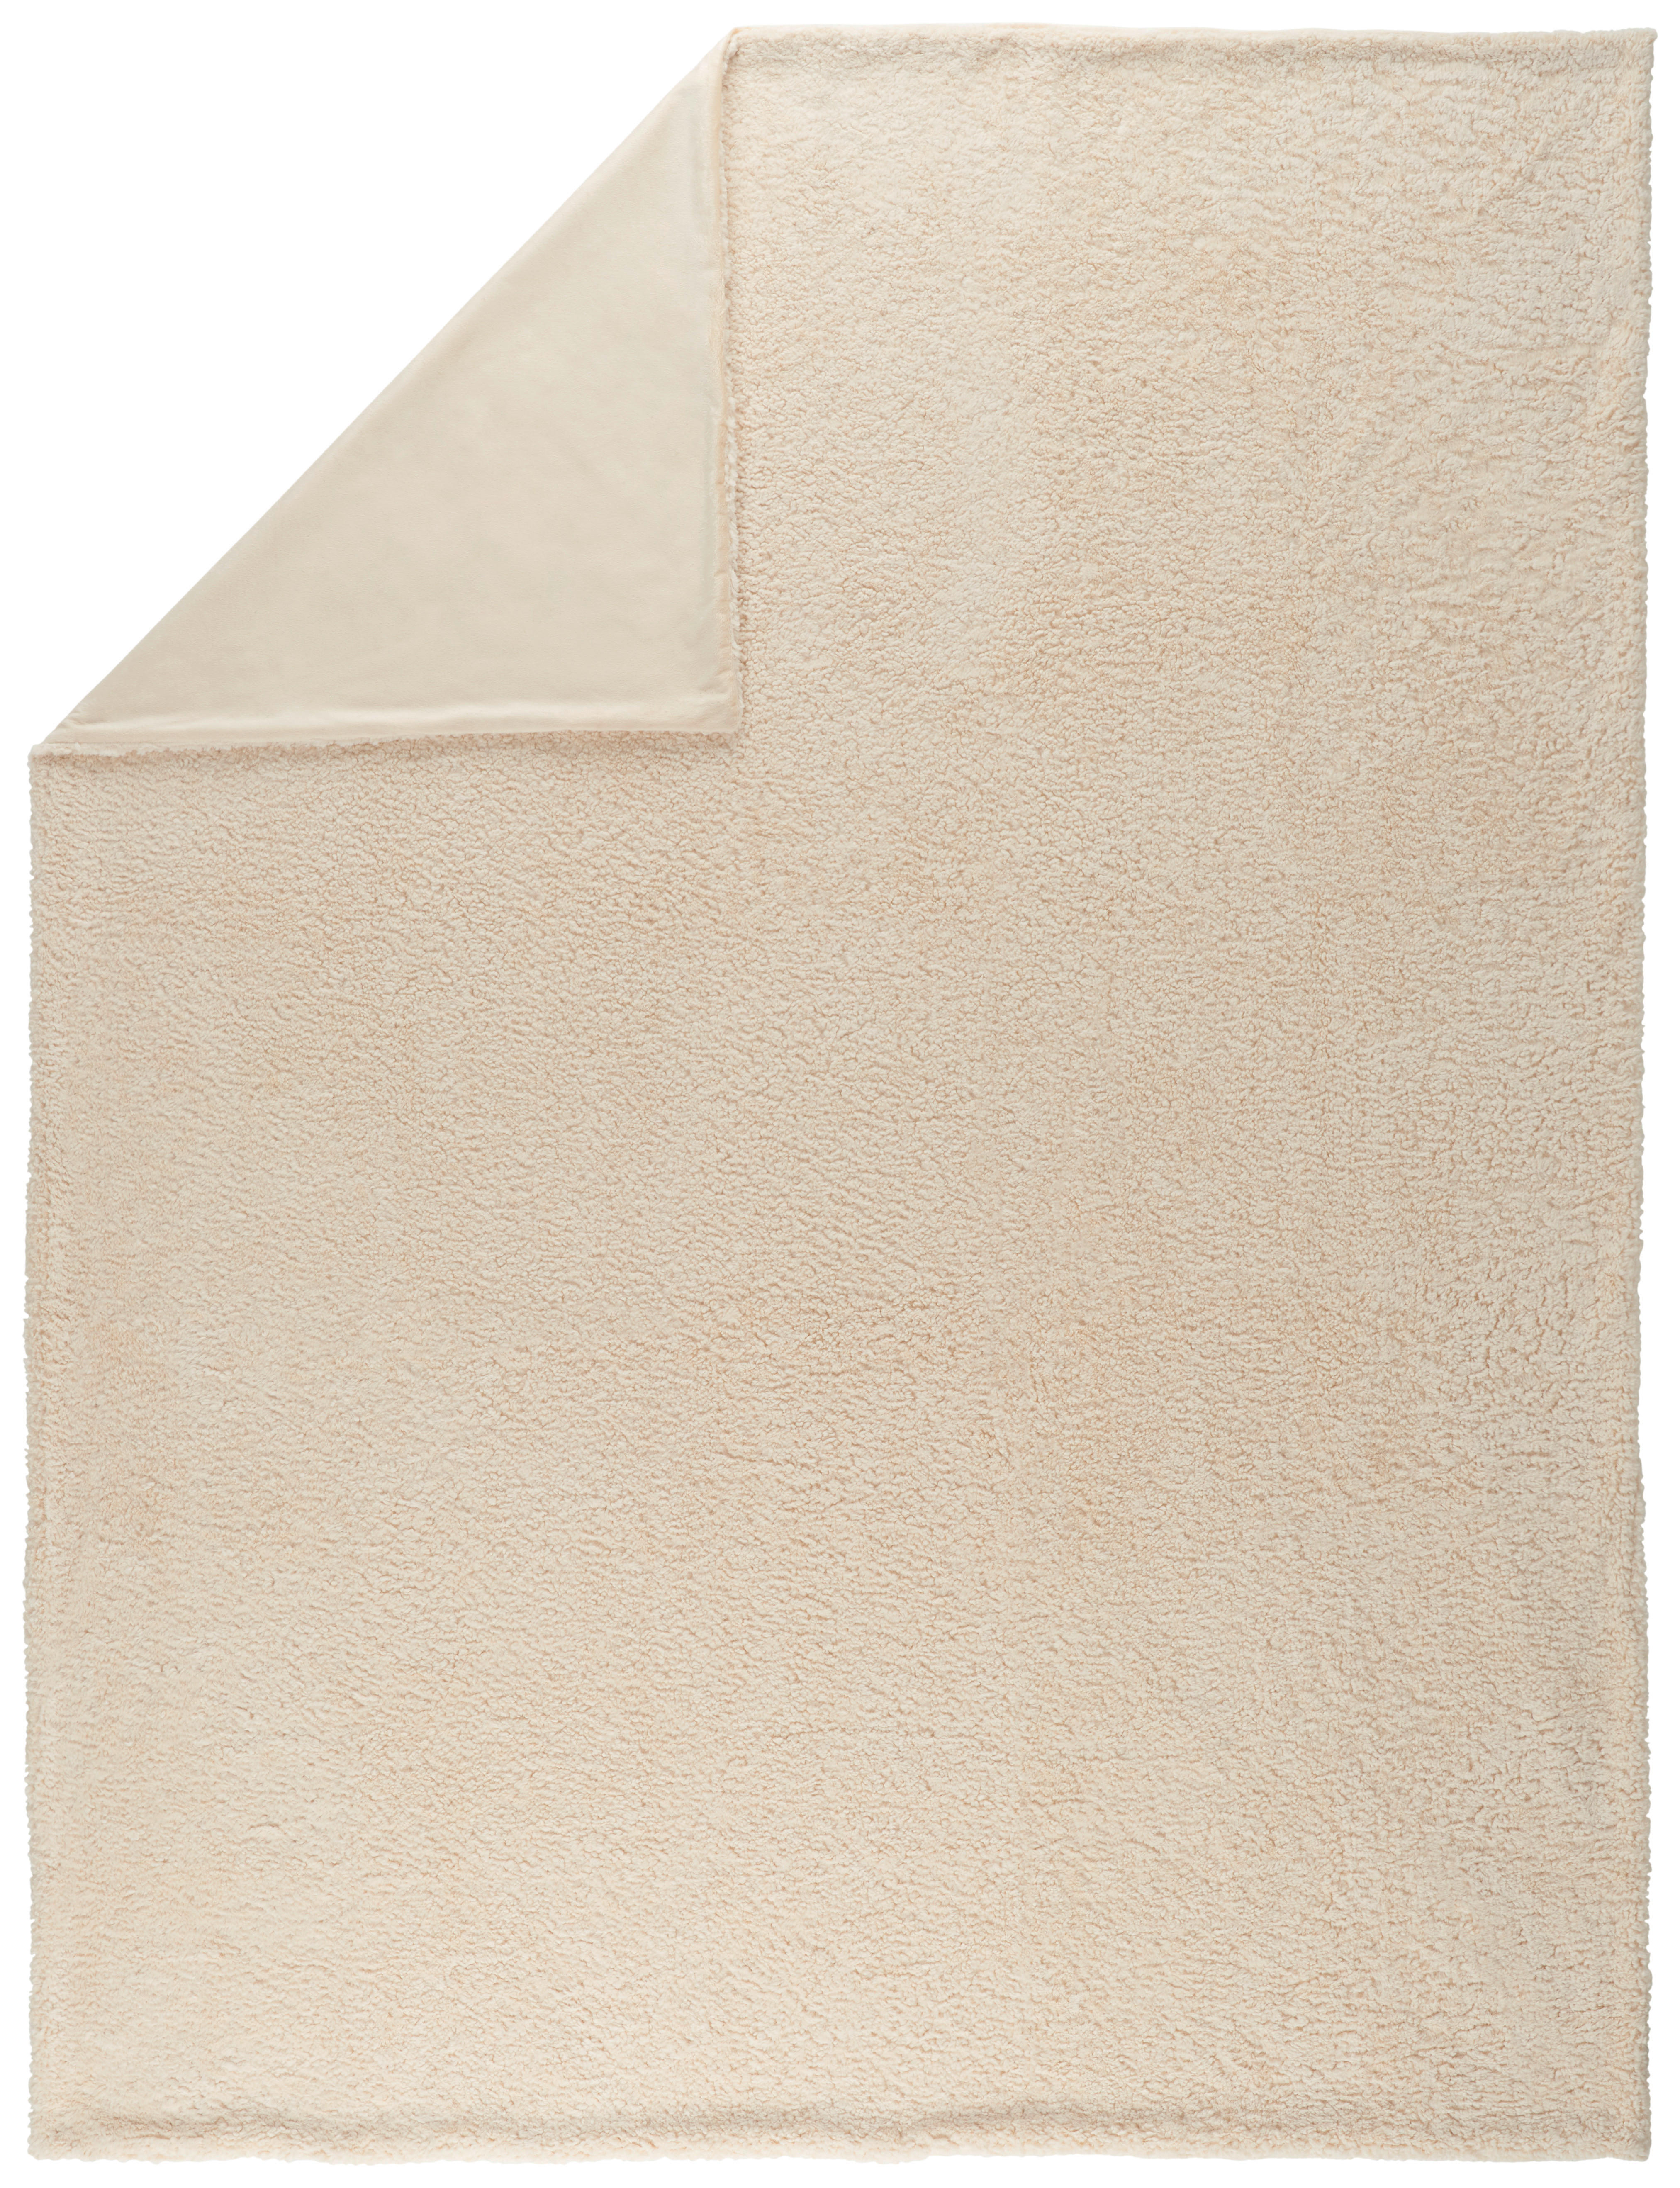 FILT 150/200 cm  - beige, Klassisk, textil (150/200cm) - Novel